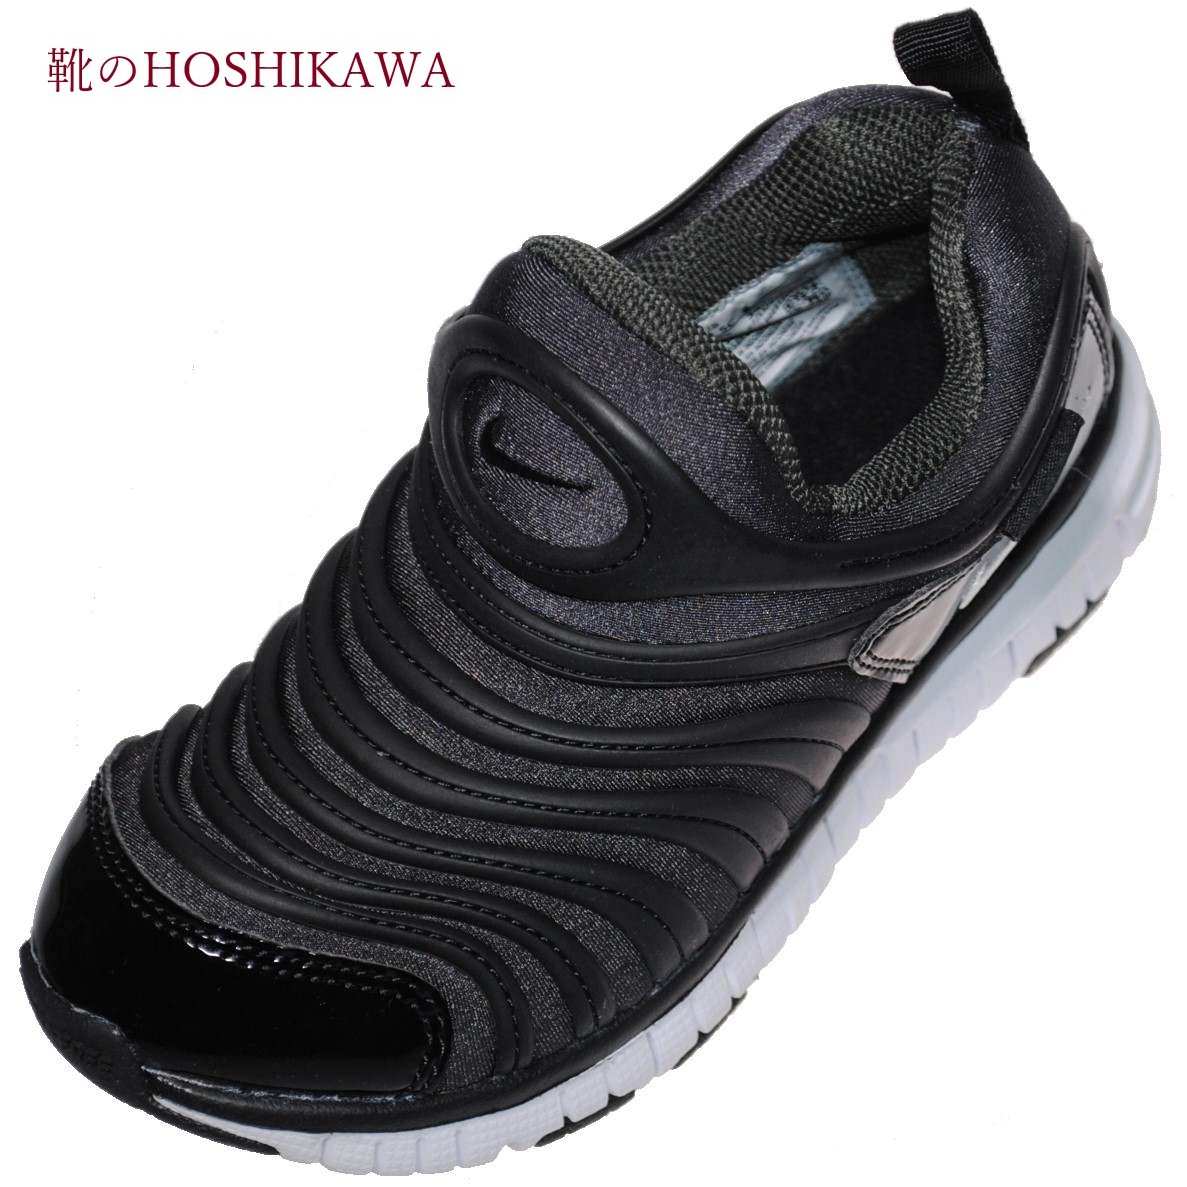 ナイキ 爆買い新作 スニーカー 子供用 ダイナモ キッズ 小さいサイズ 靴のhoshikawa ブラック ダイナモフリー18cm 22cm 013 Nike キッズスリッポン